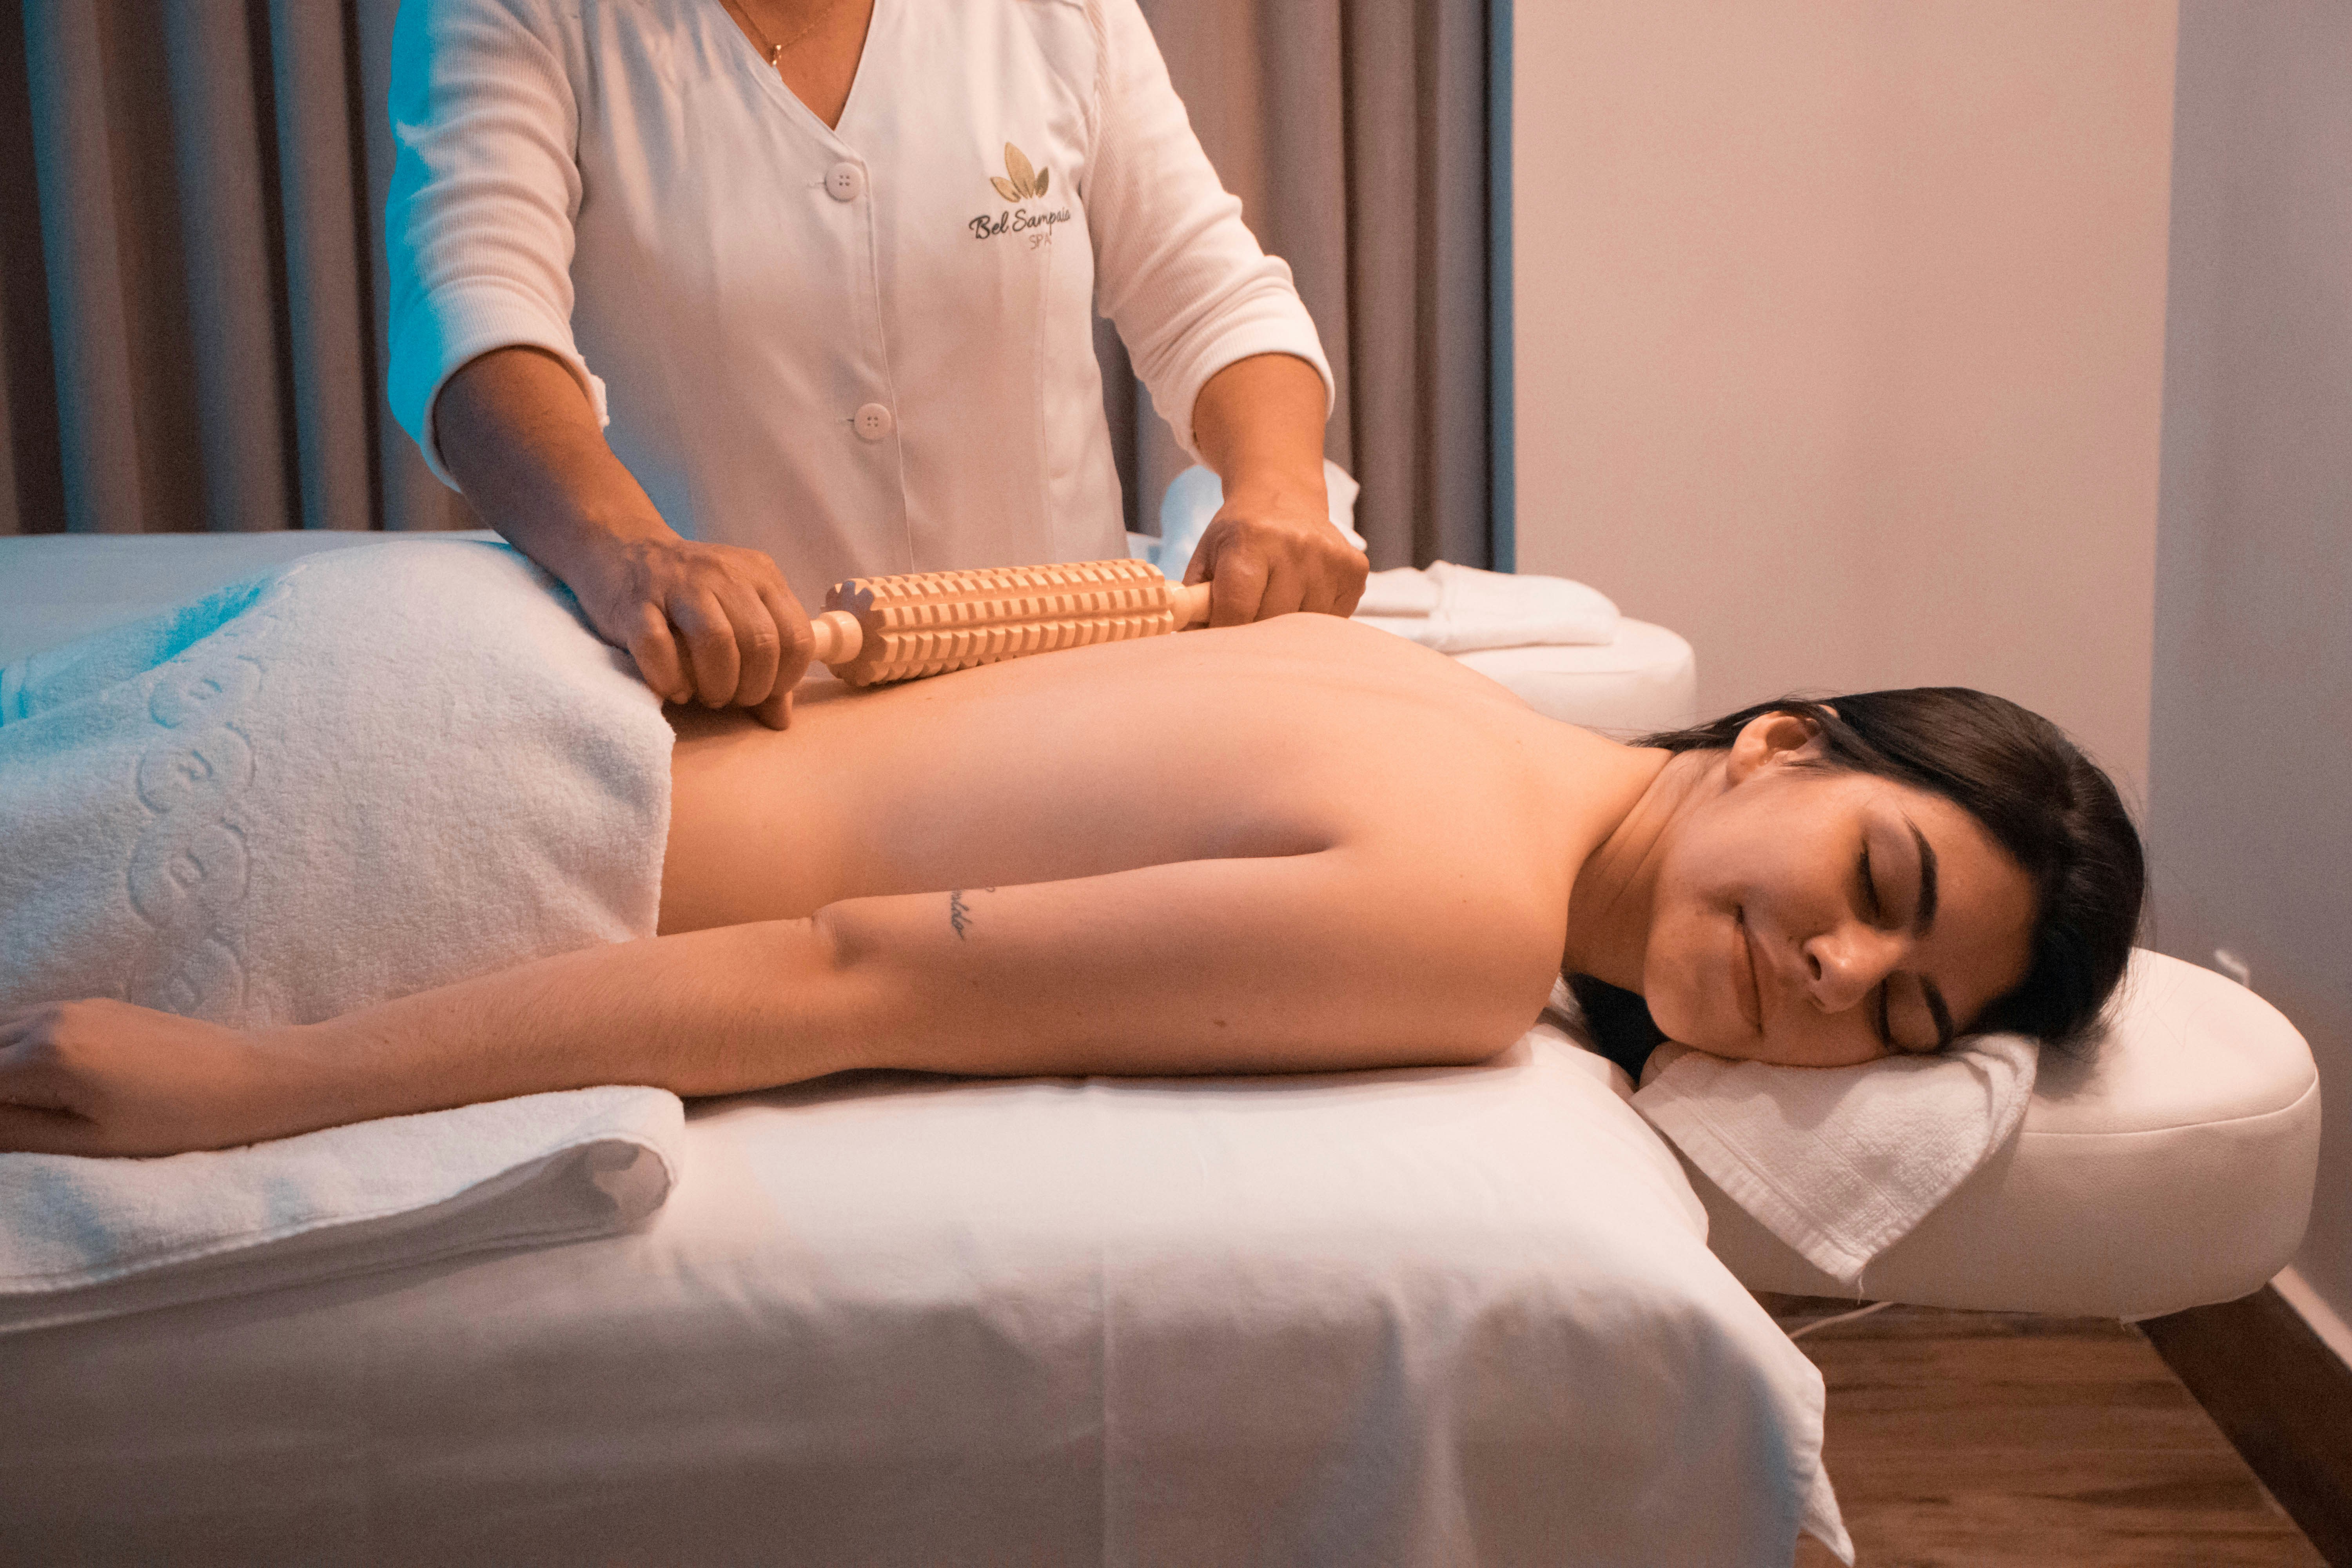 Diskurs flugt Regeringsforordning Lækker thai massage i Vejen